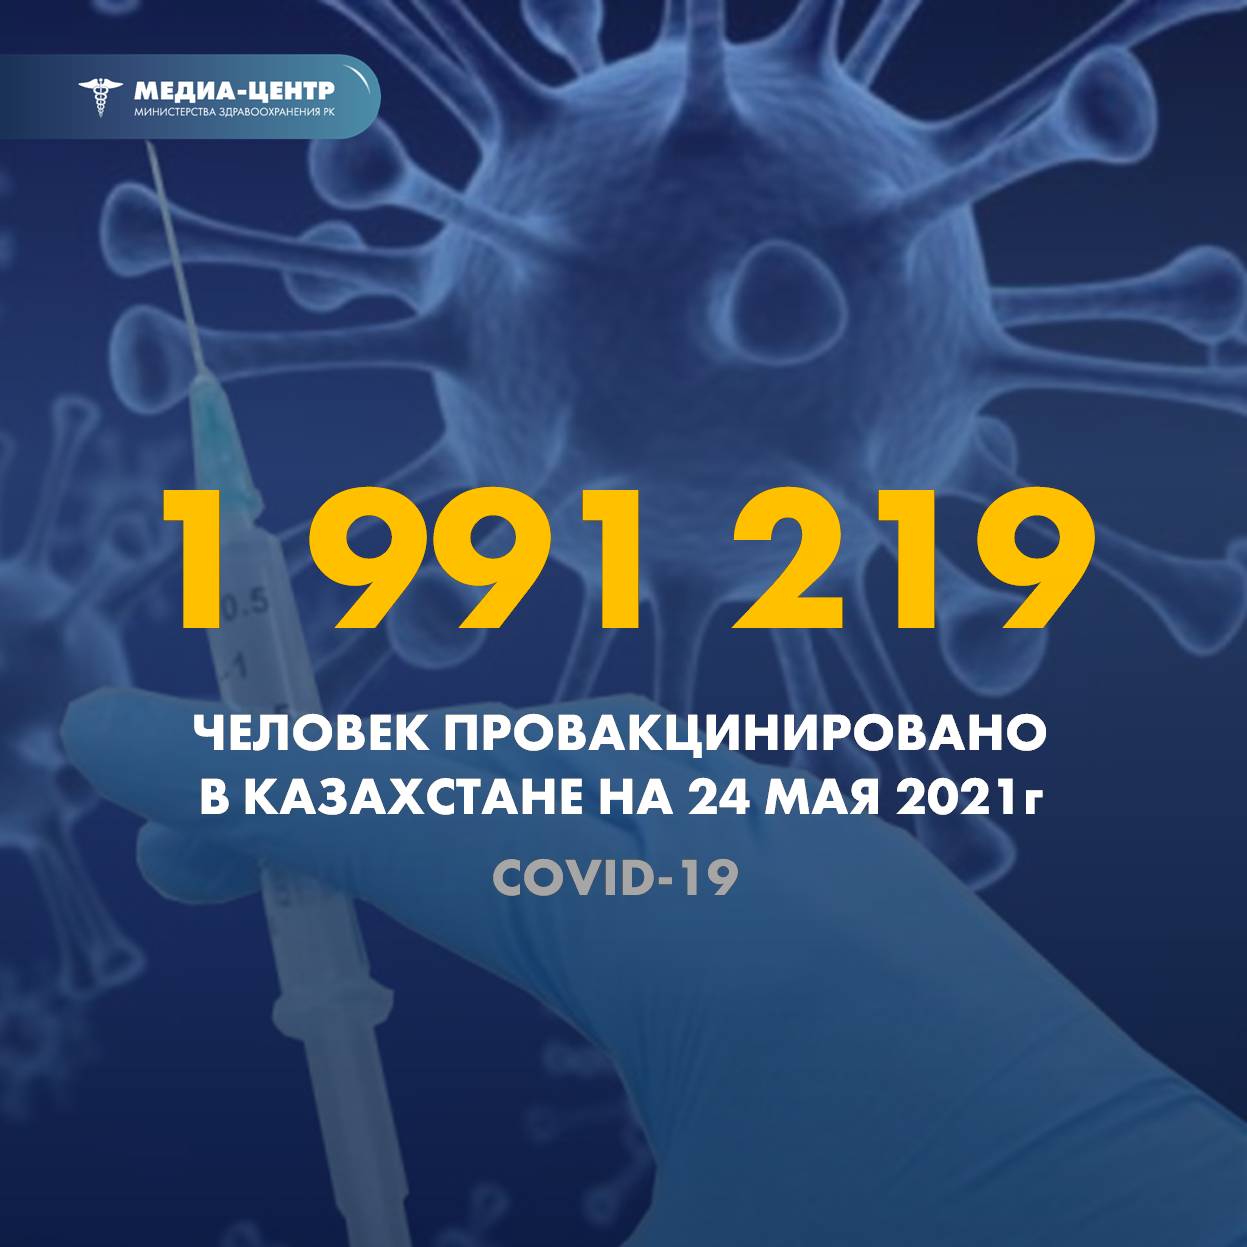 1 991 219 человек провакцинировано в Казахстане на 24 мая 2021 г